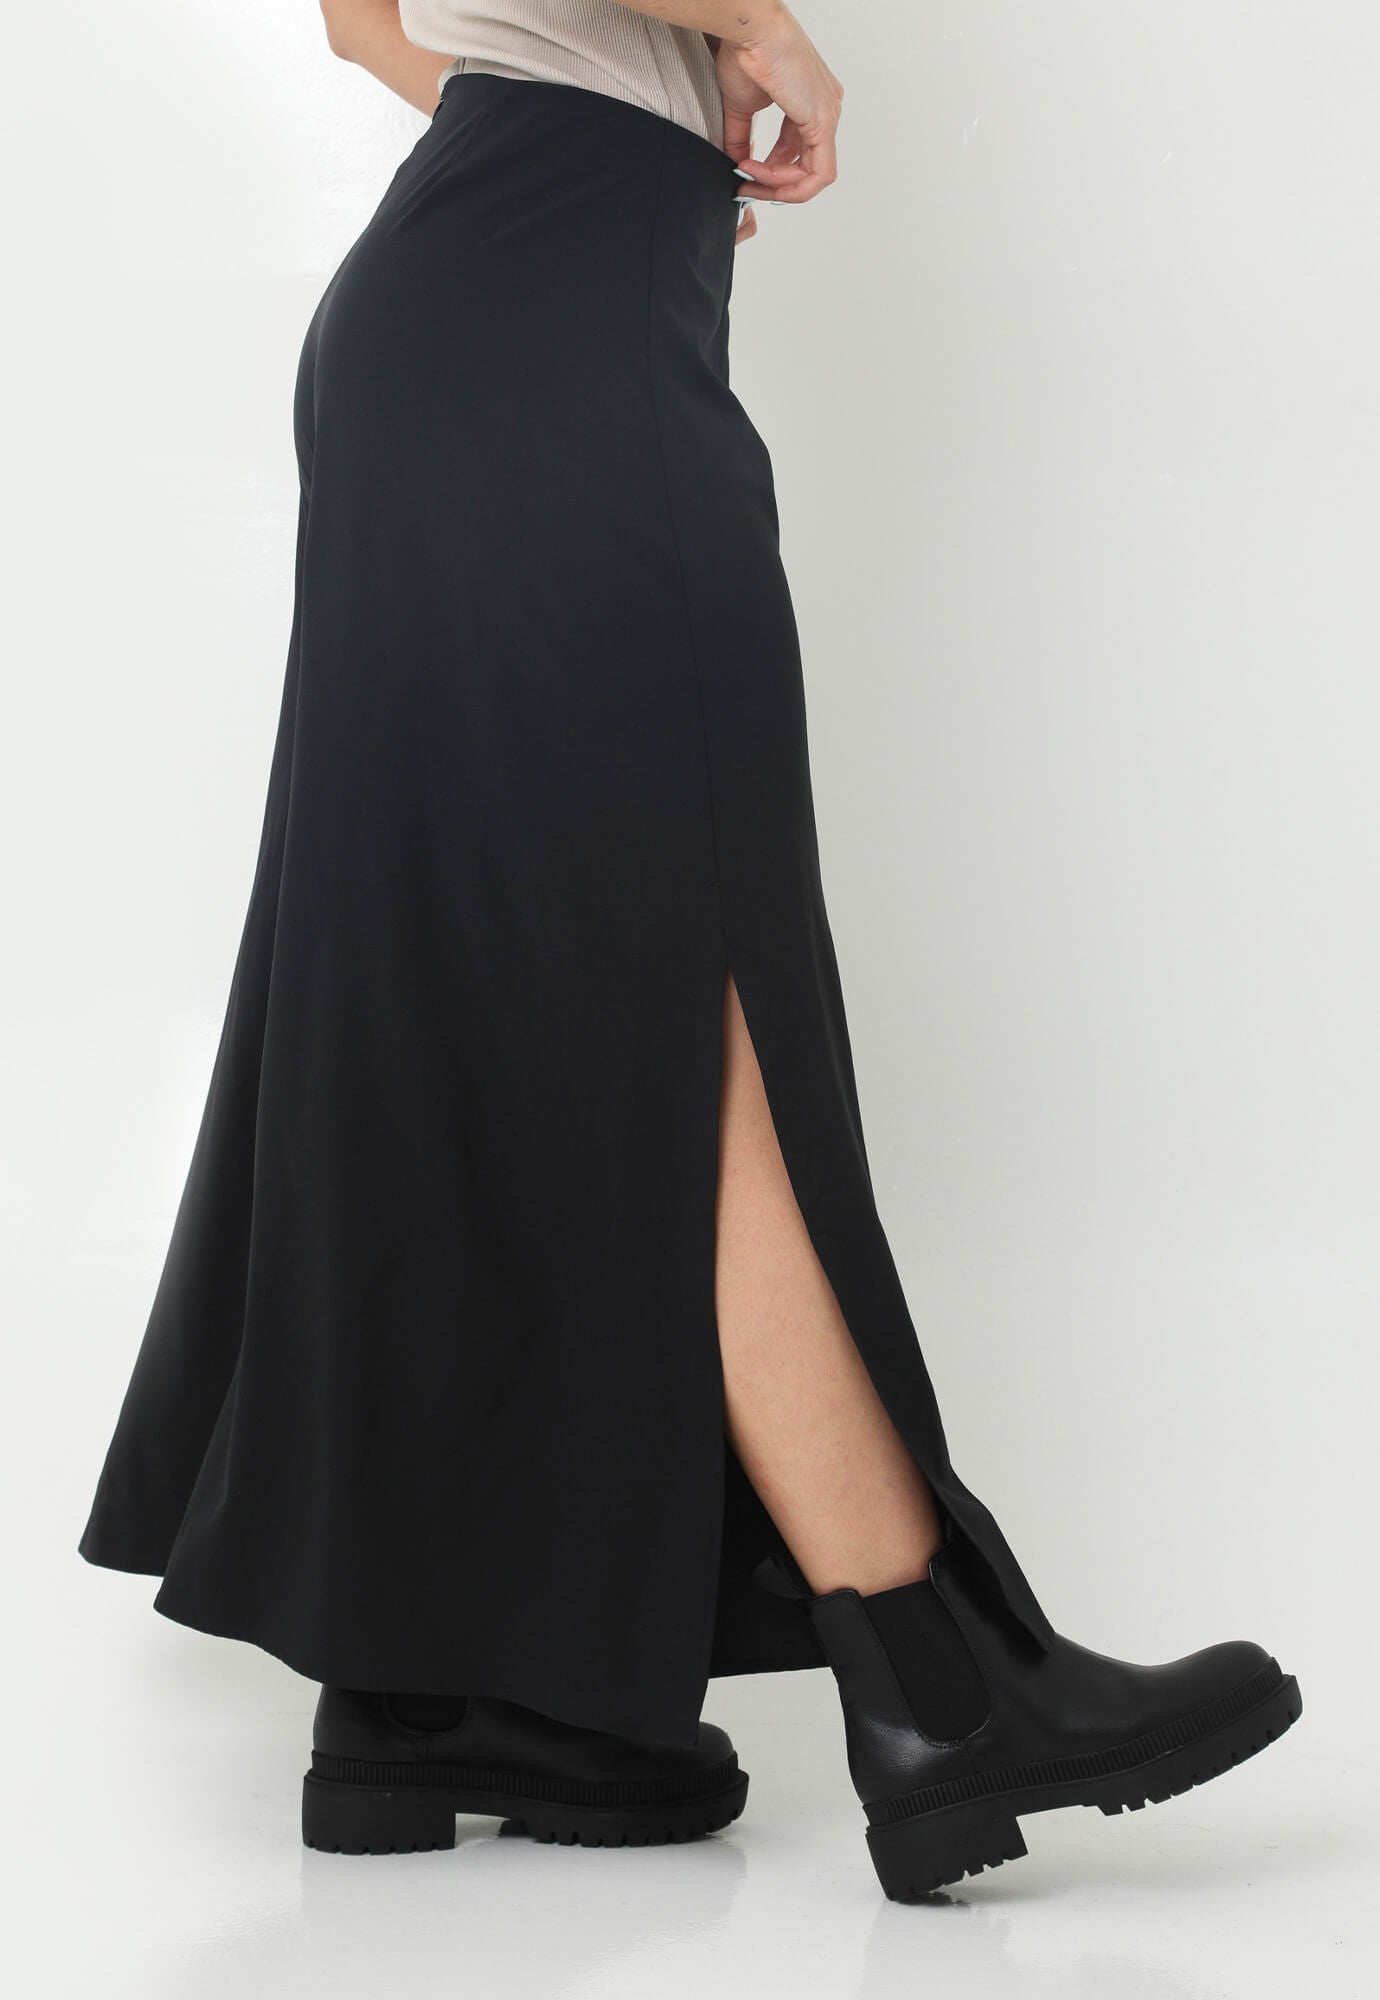 Pantalón negro con aberturas laterales en bota y cierre en trasero para mujer